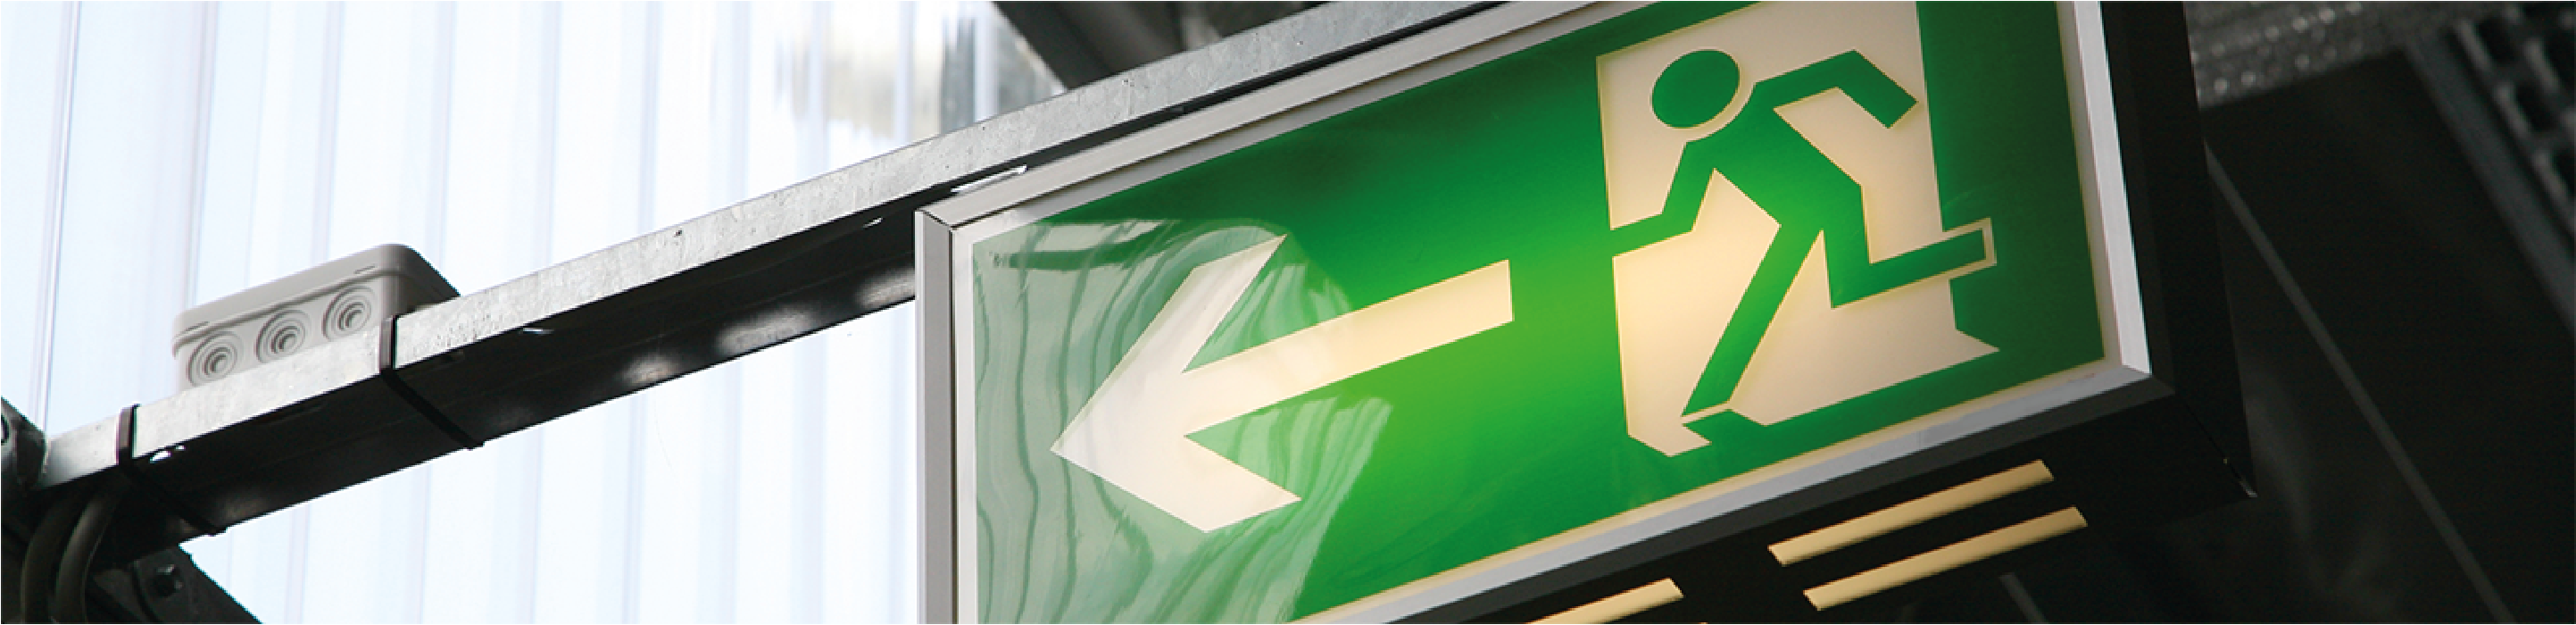 A green exit sign